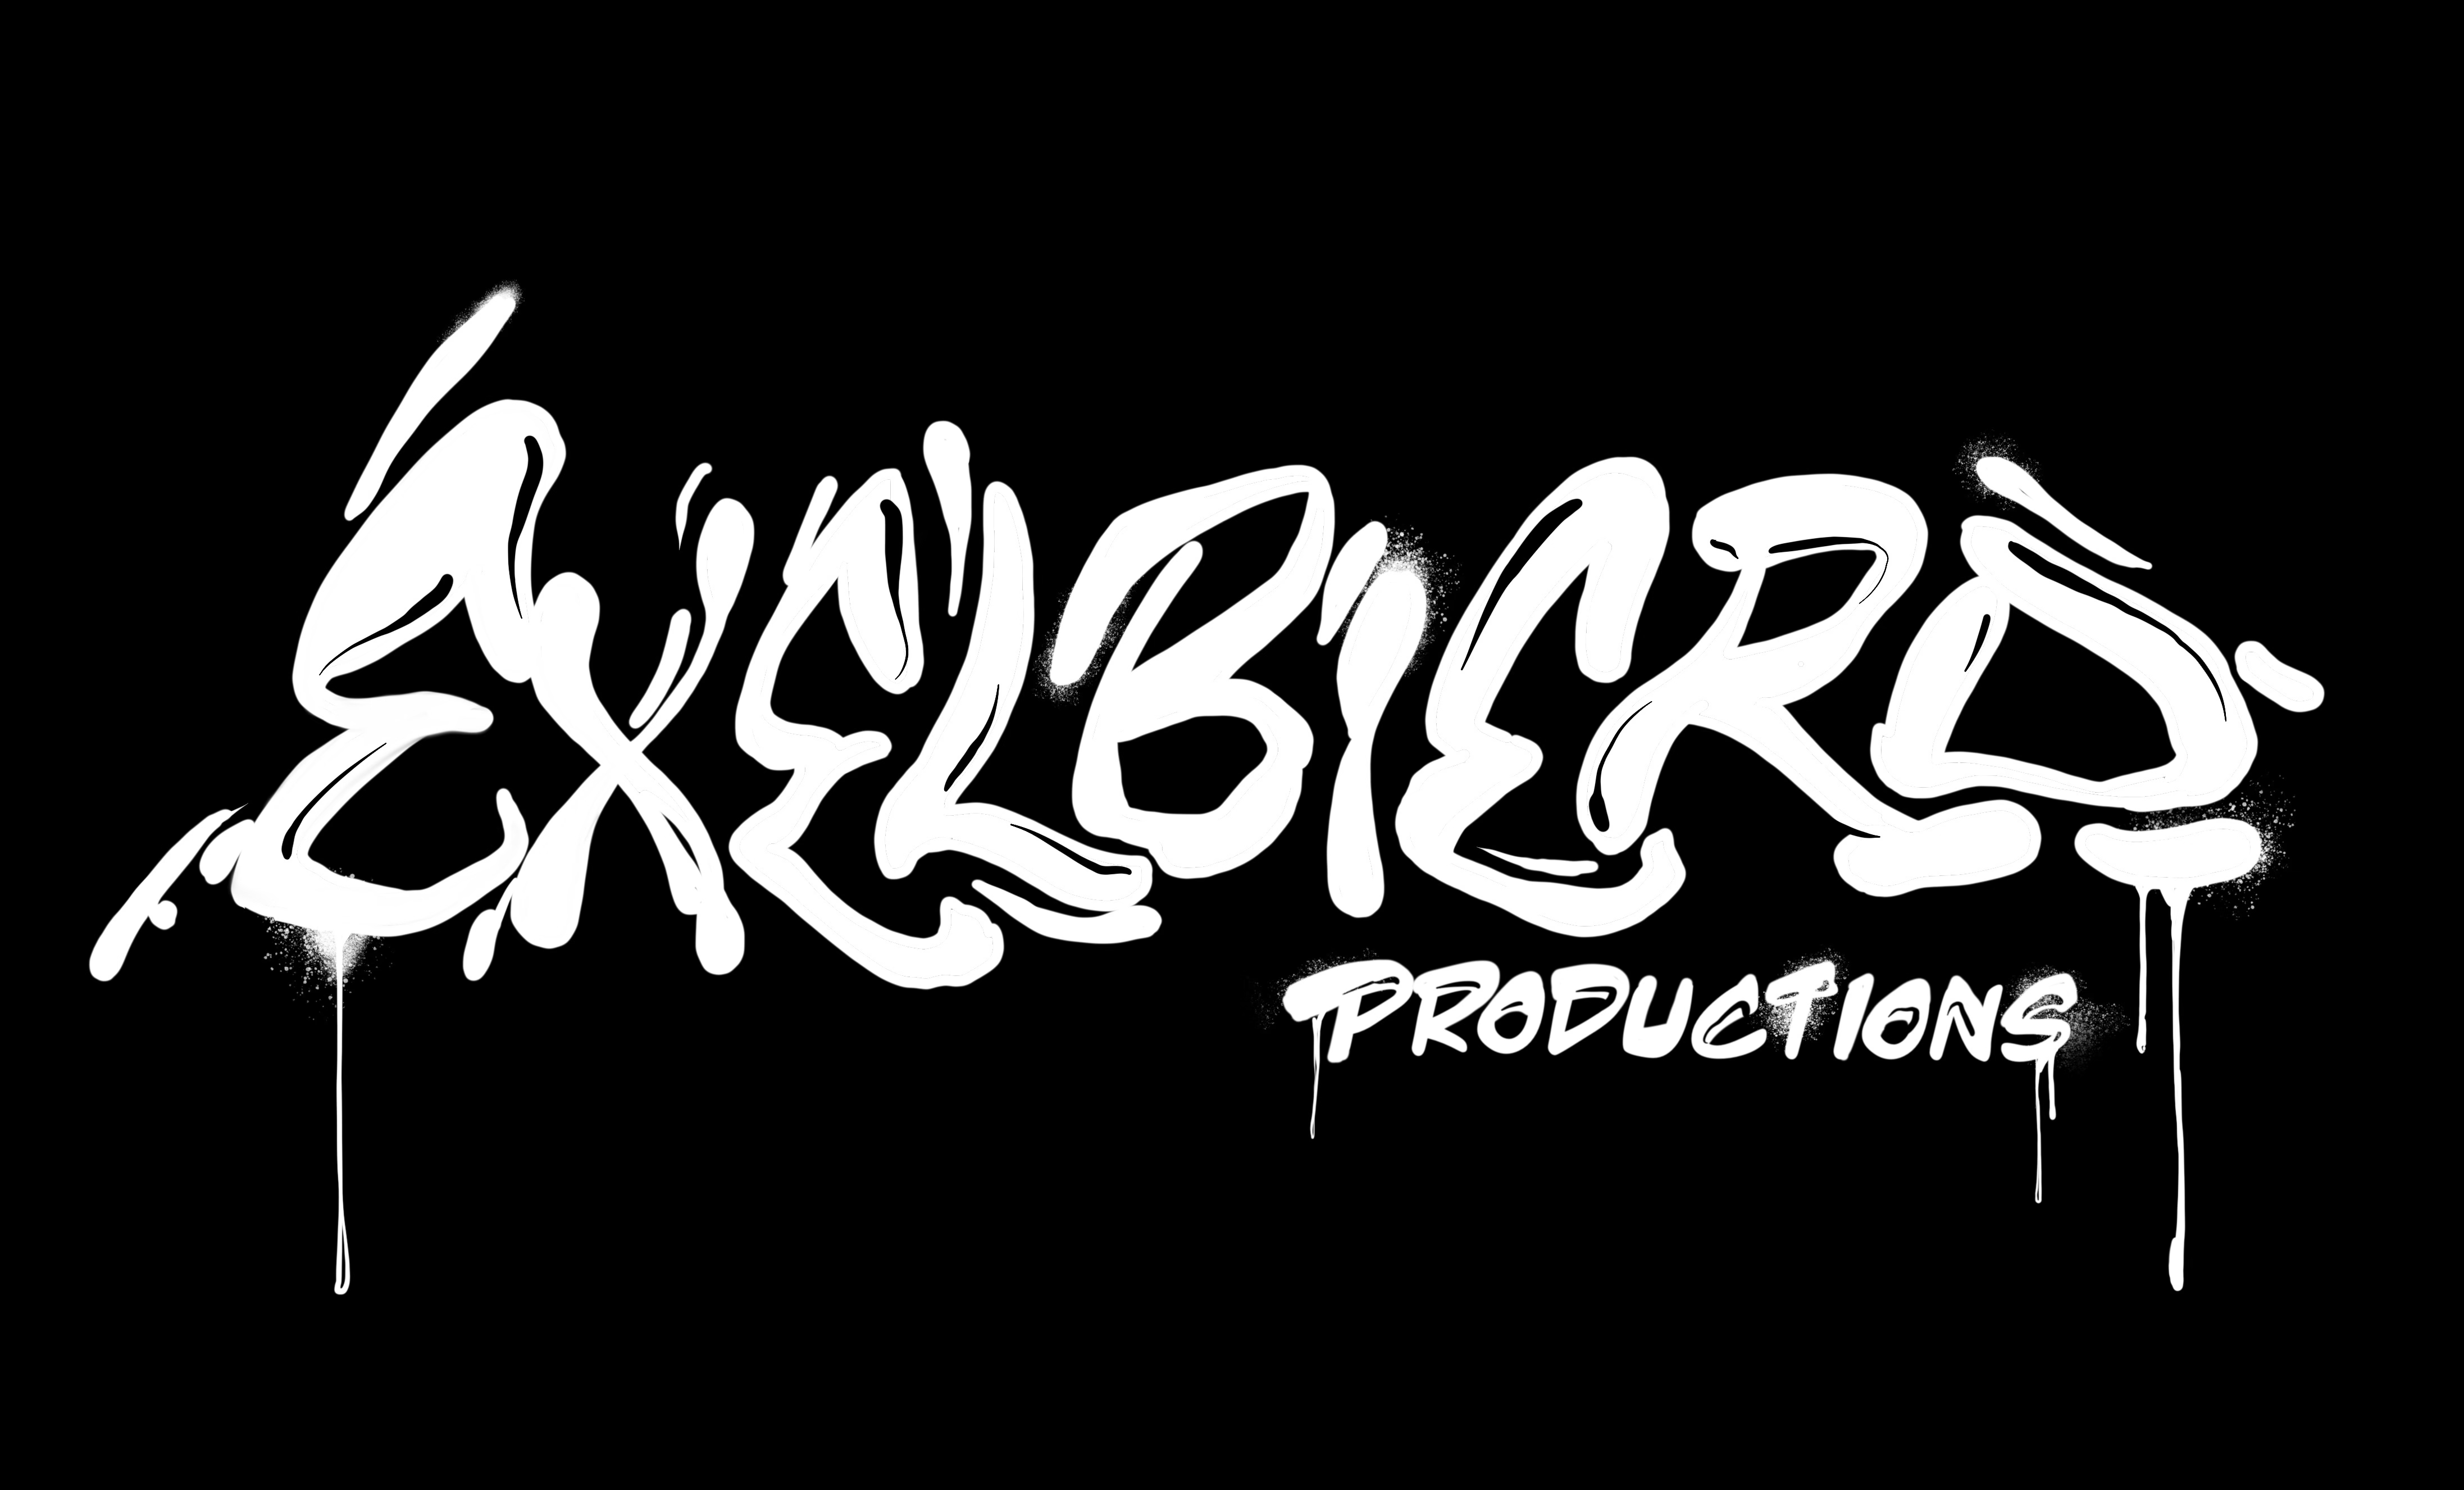 exelbierd productions